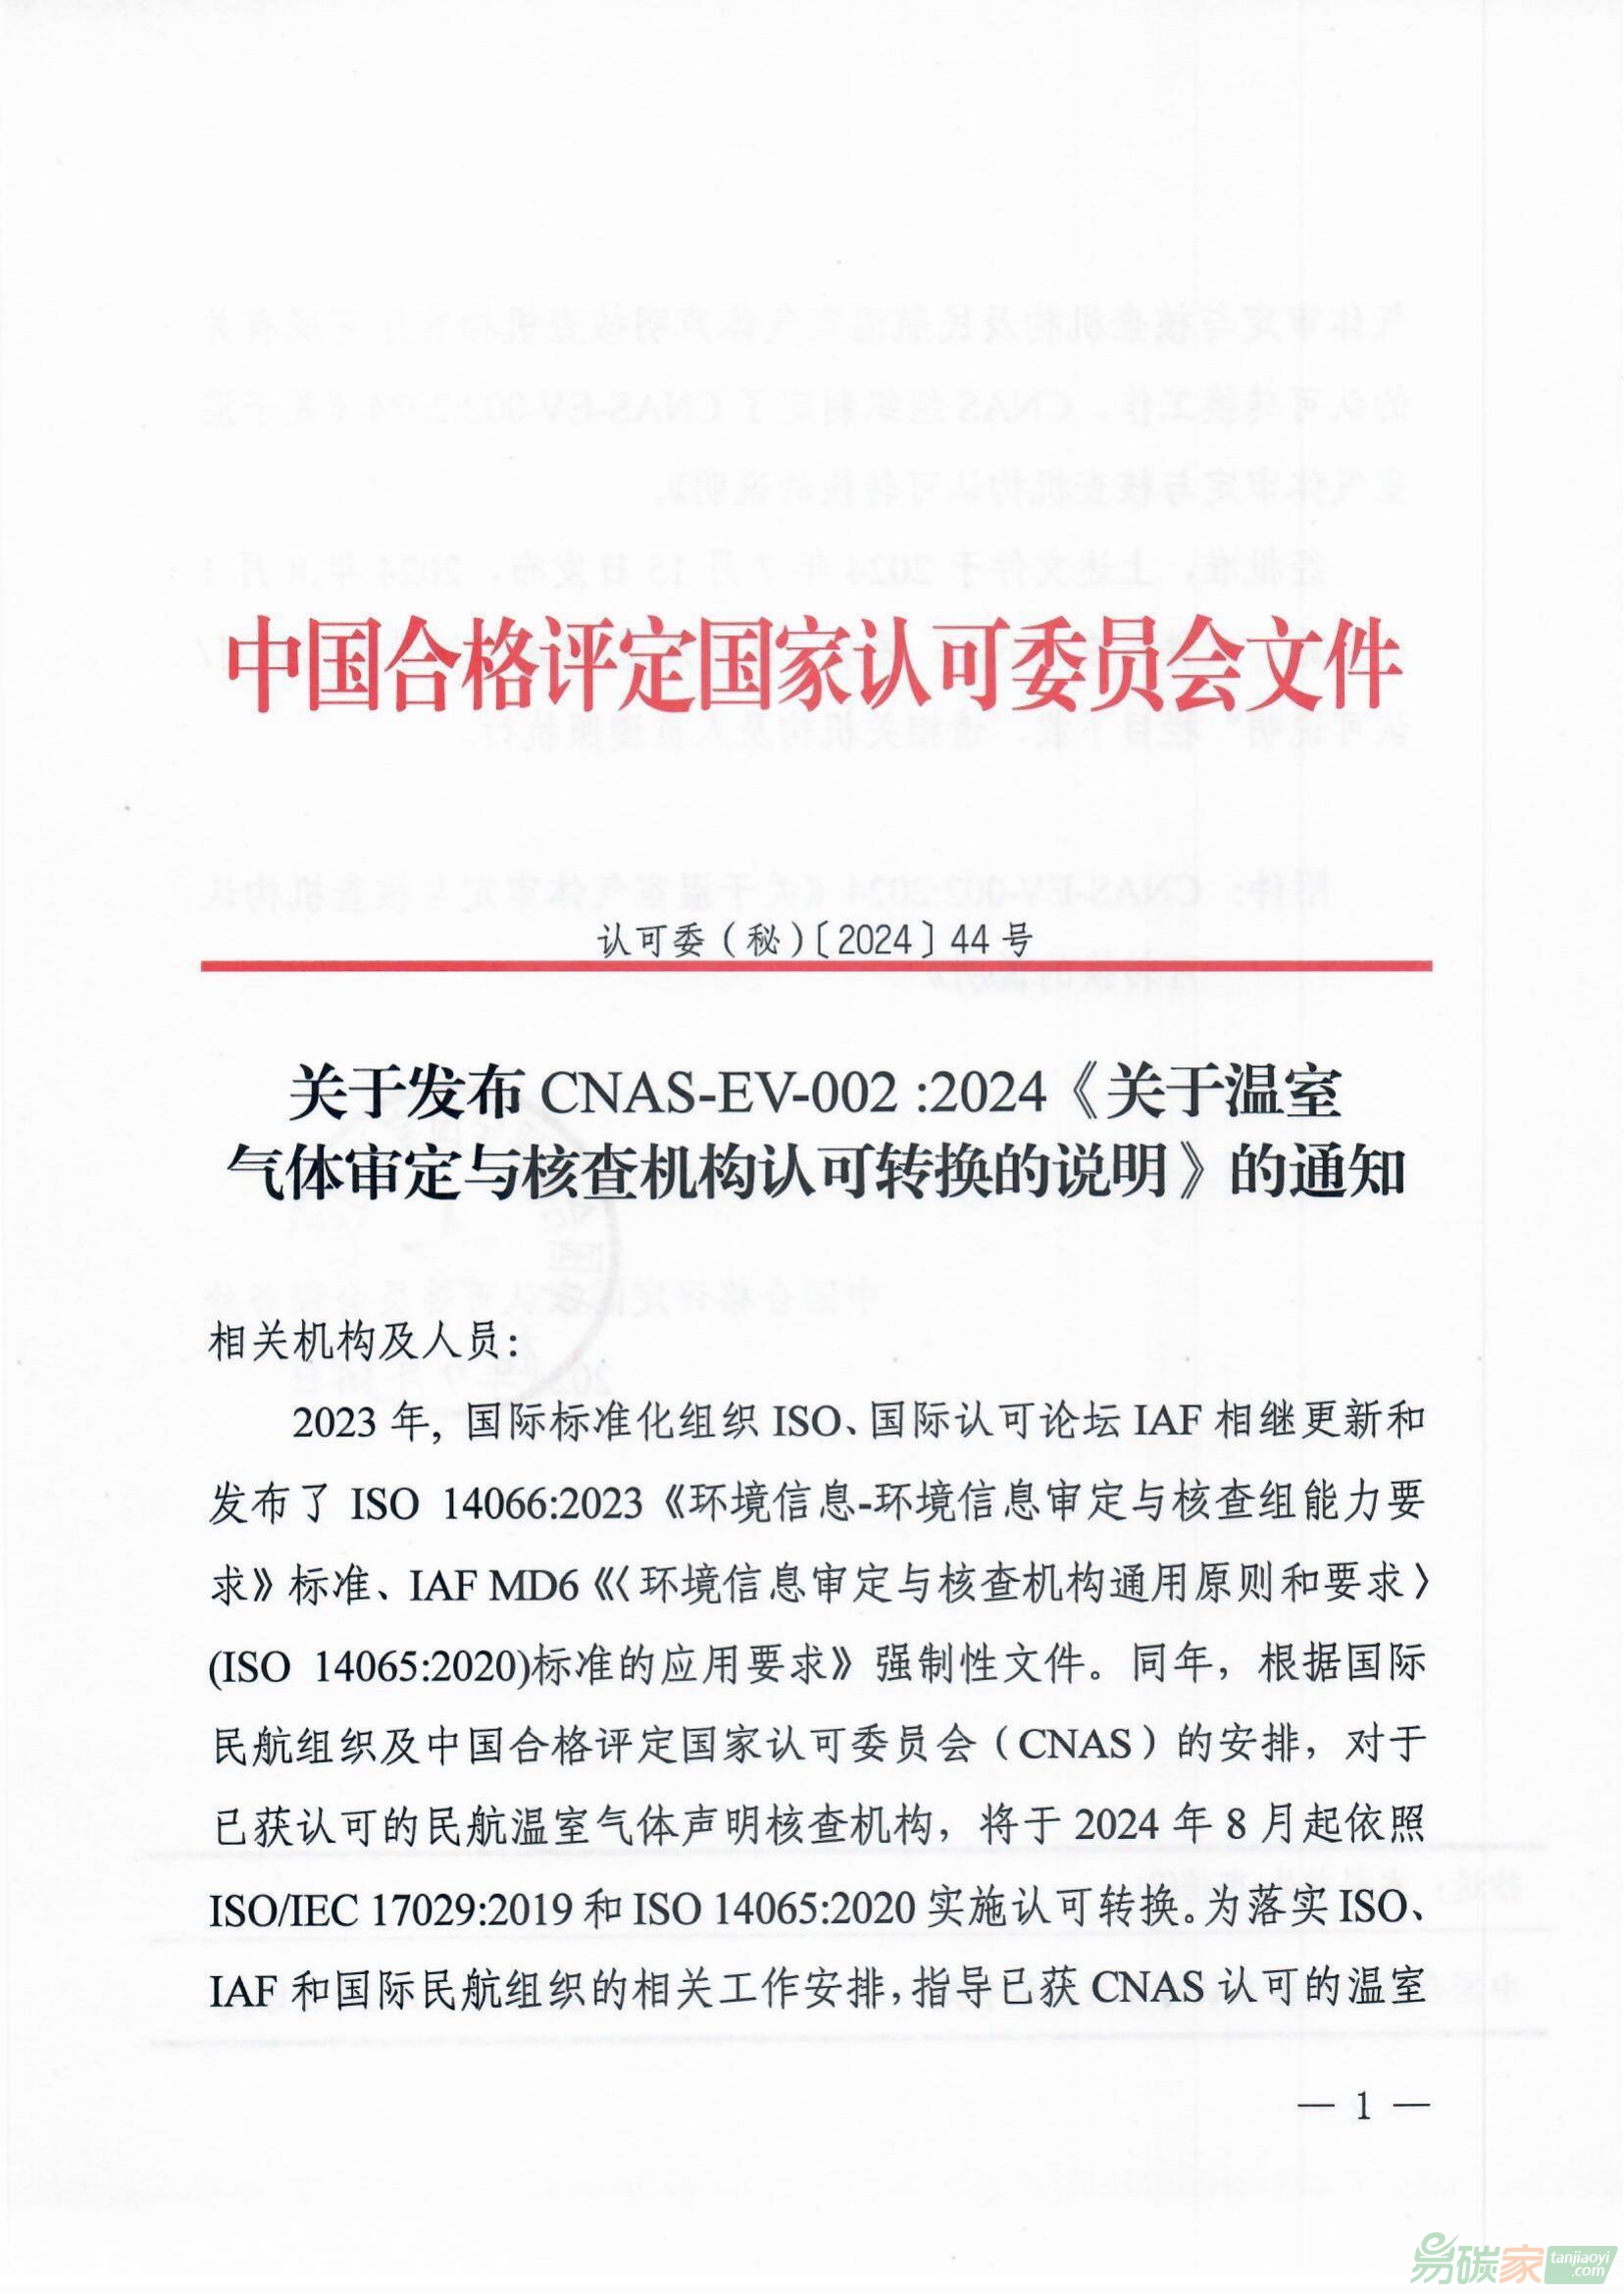 關于發布CNAS-EV-002：2024《關于溫室氣體審定與核查機構認可轉換的說明》的通知